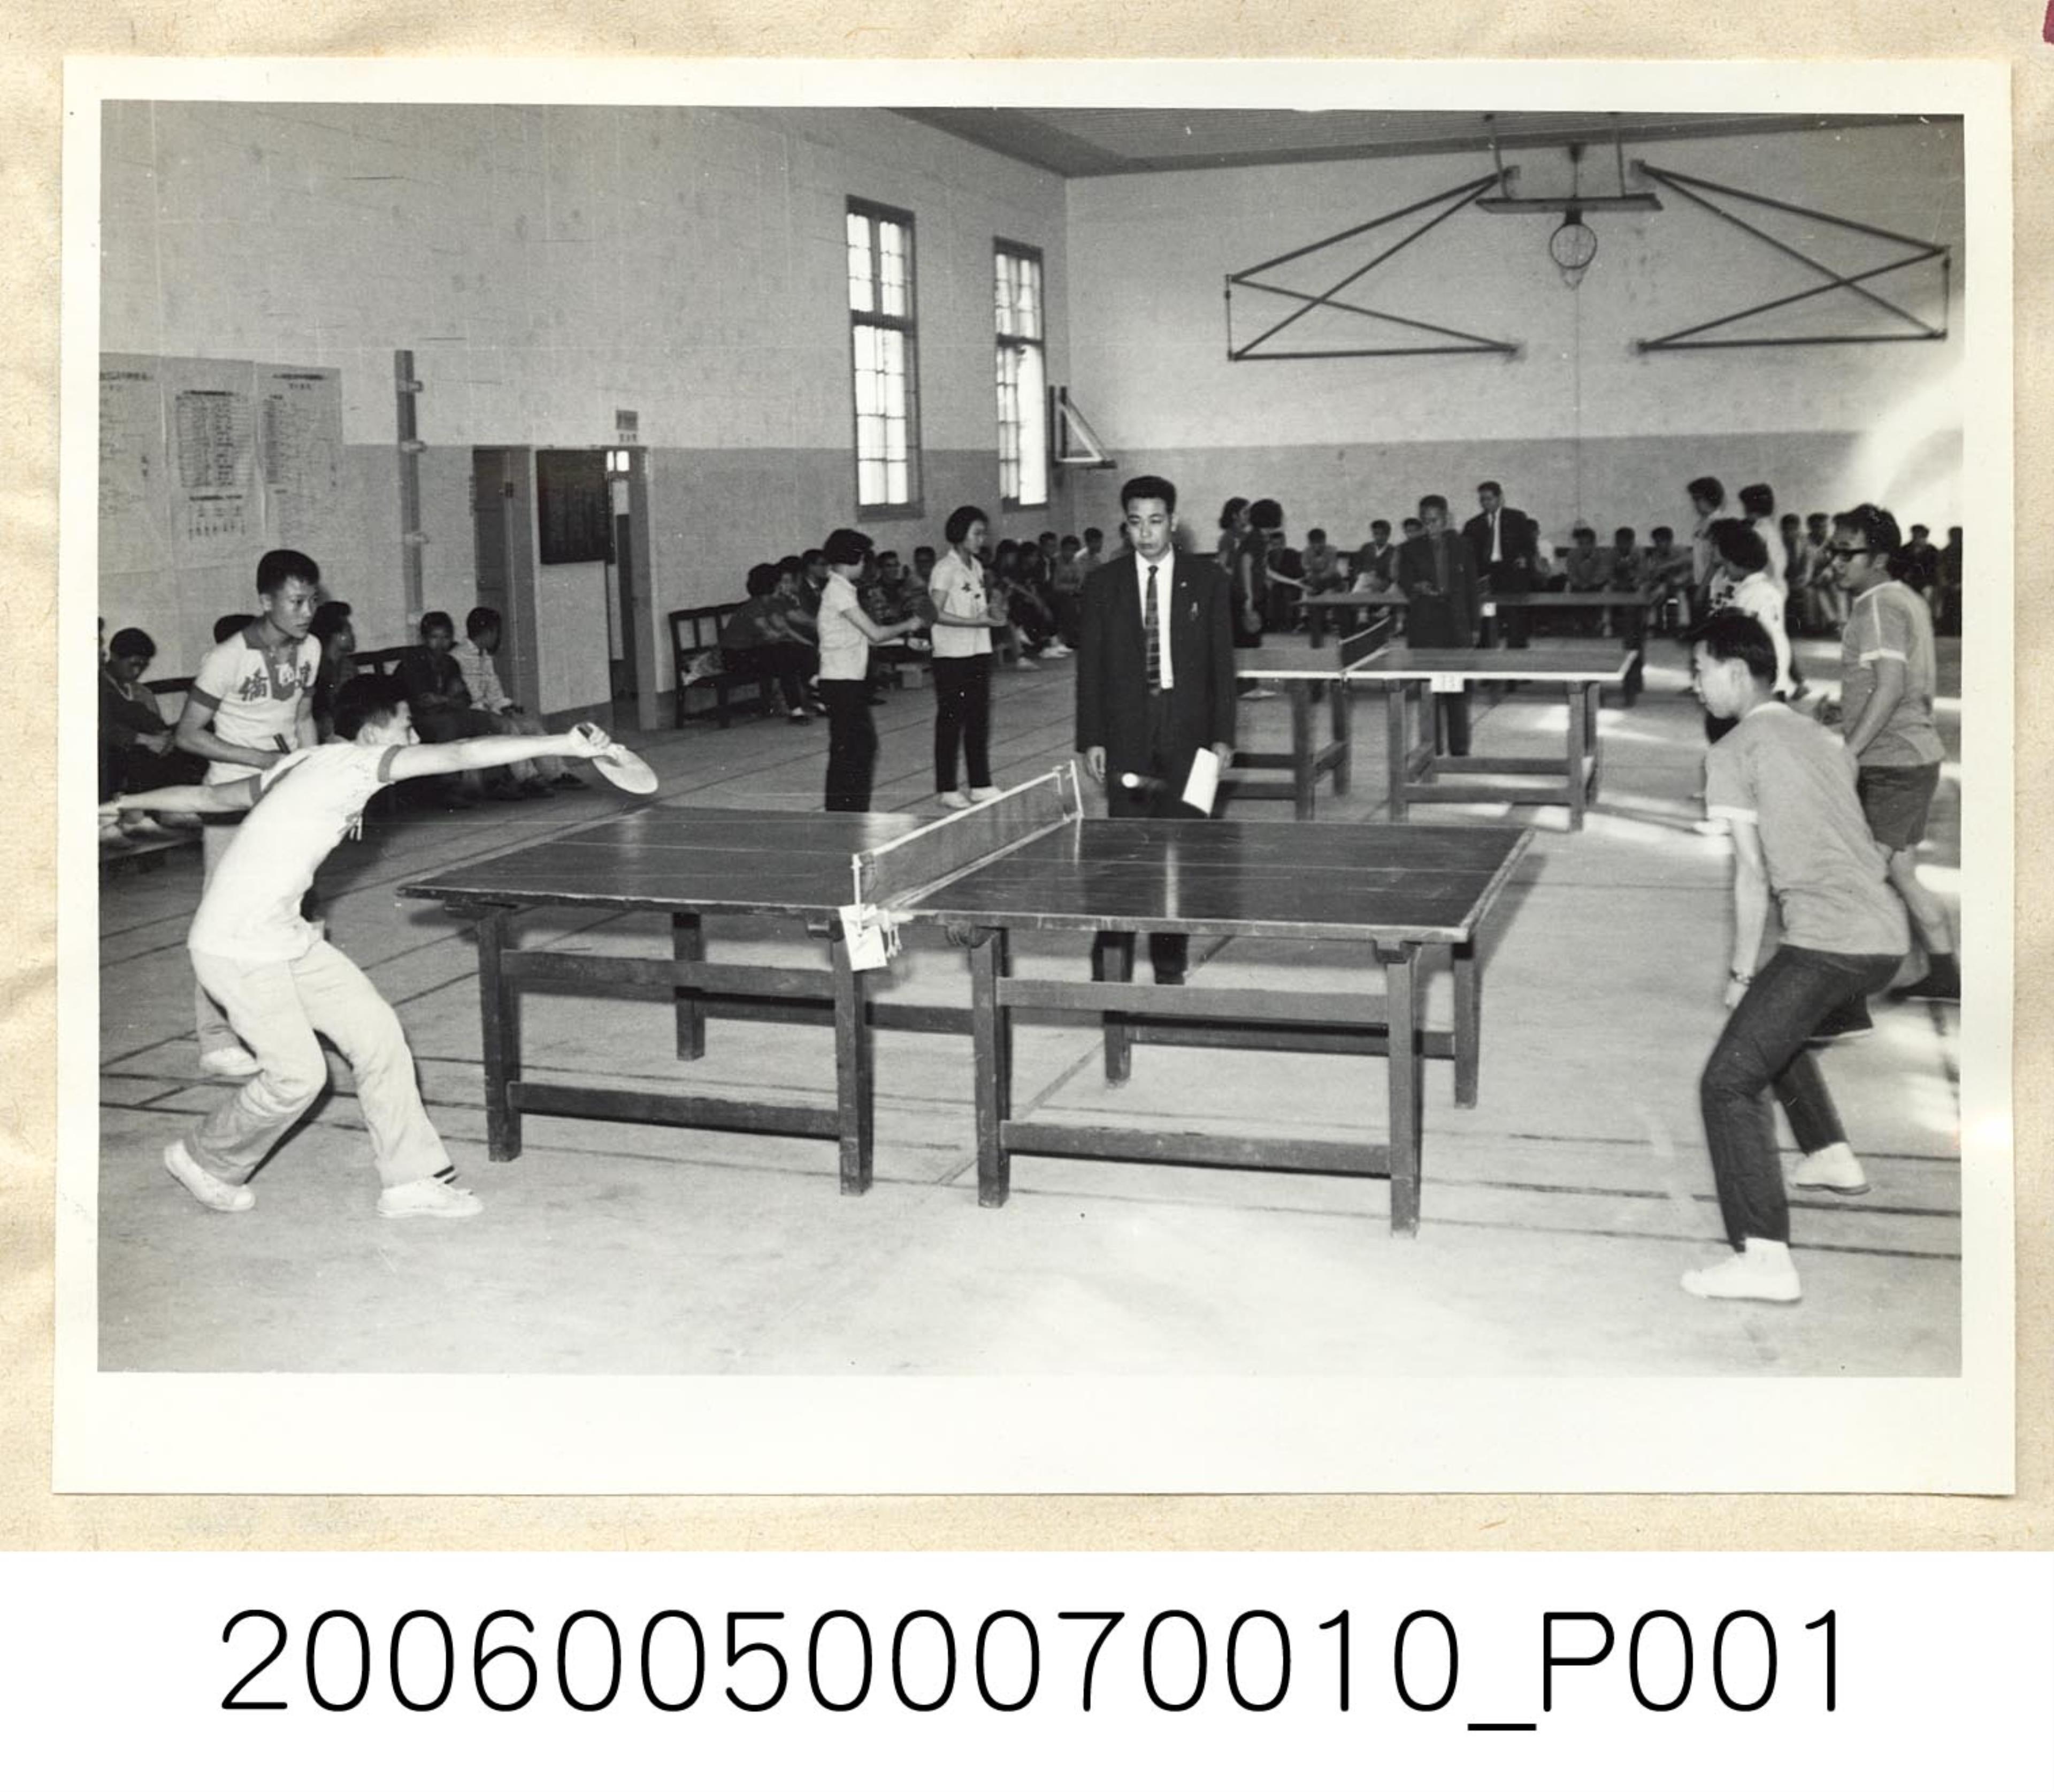 王氏攝影社攝〈五十三年度僑生桌球錦標賽於台北工專揭幕〉照片 (共1張)